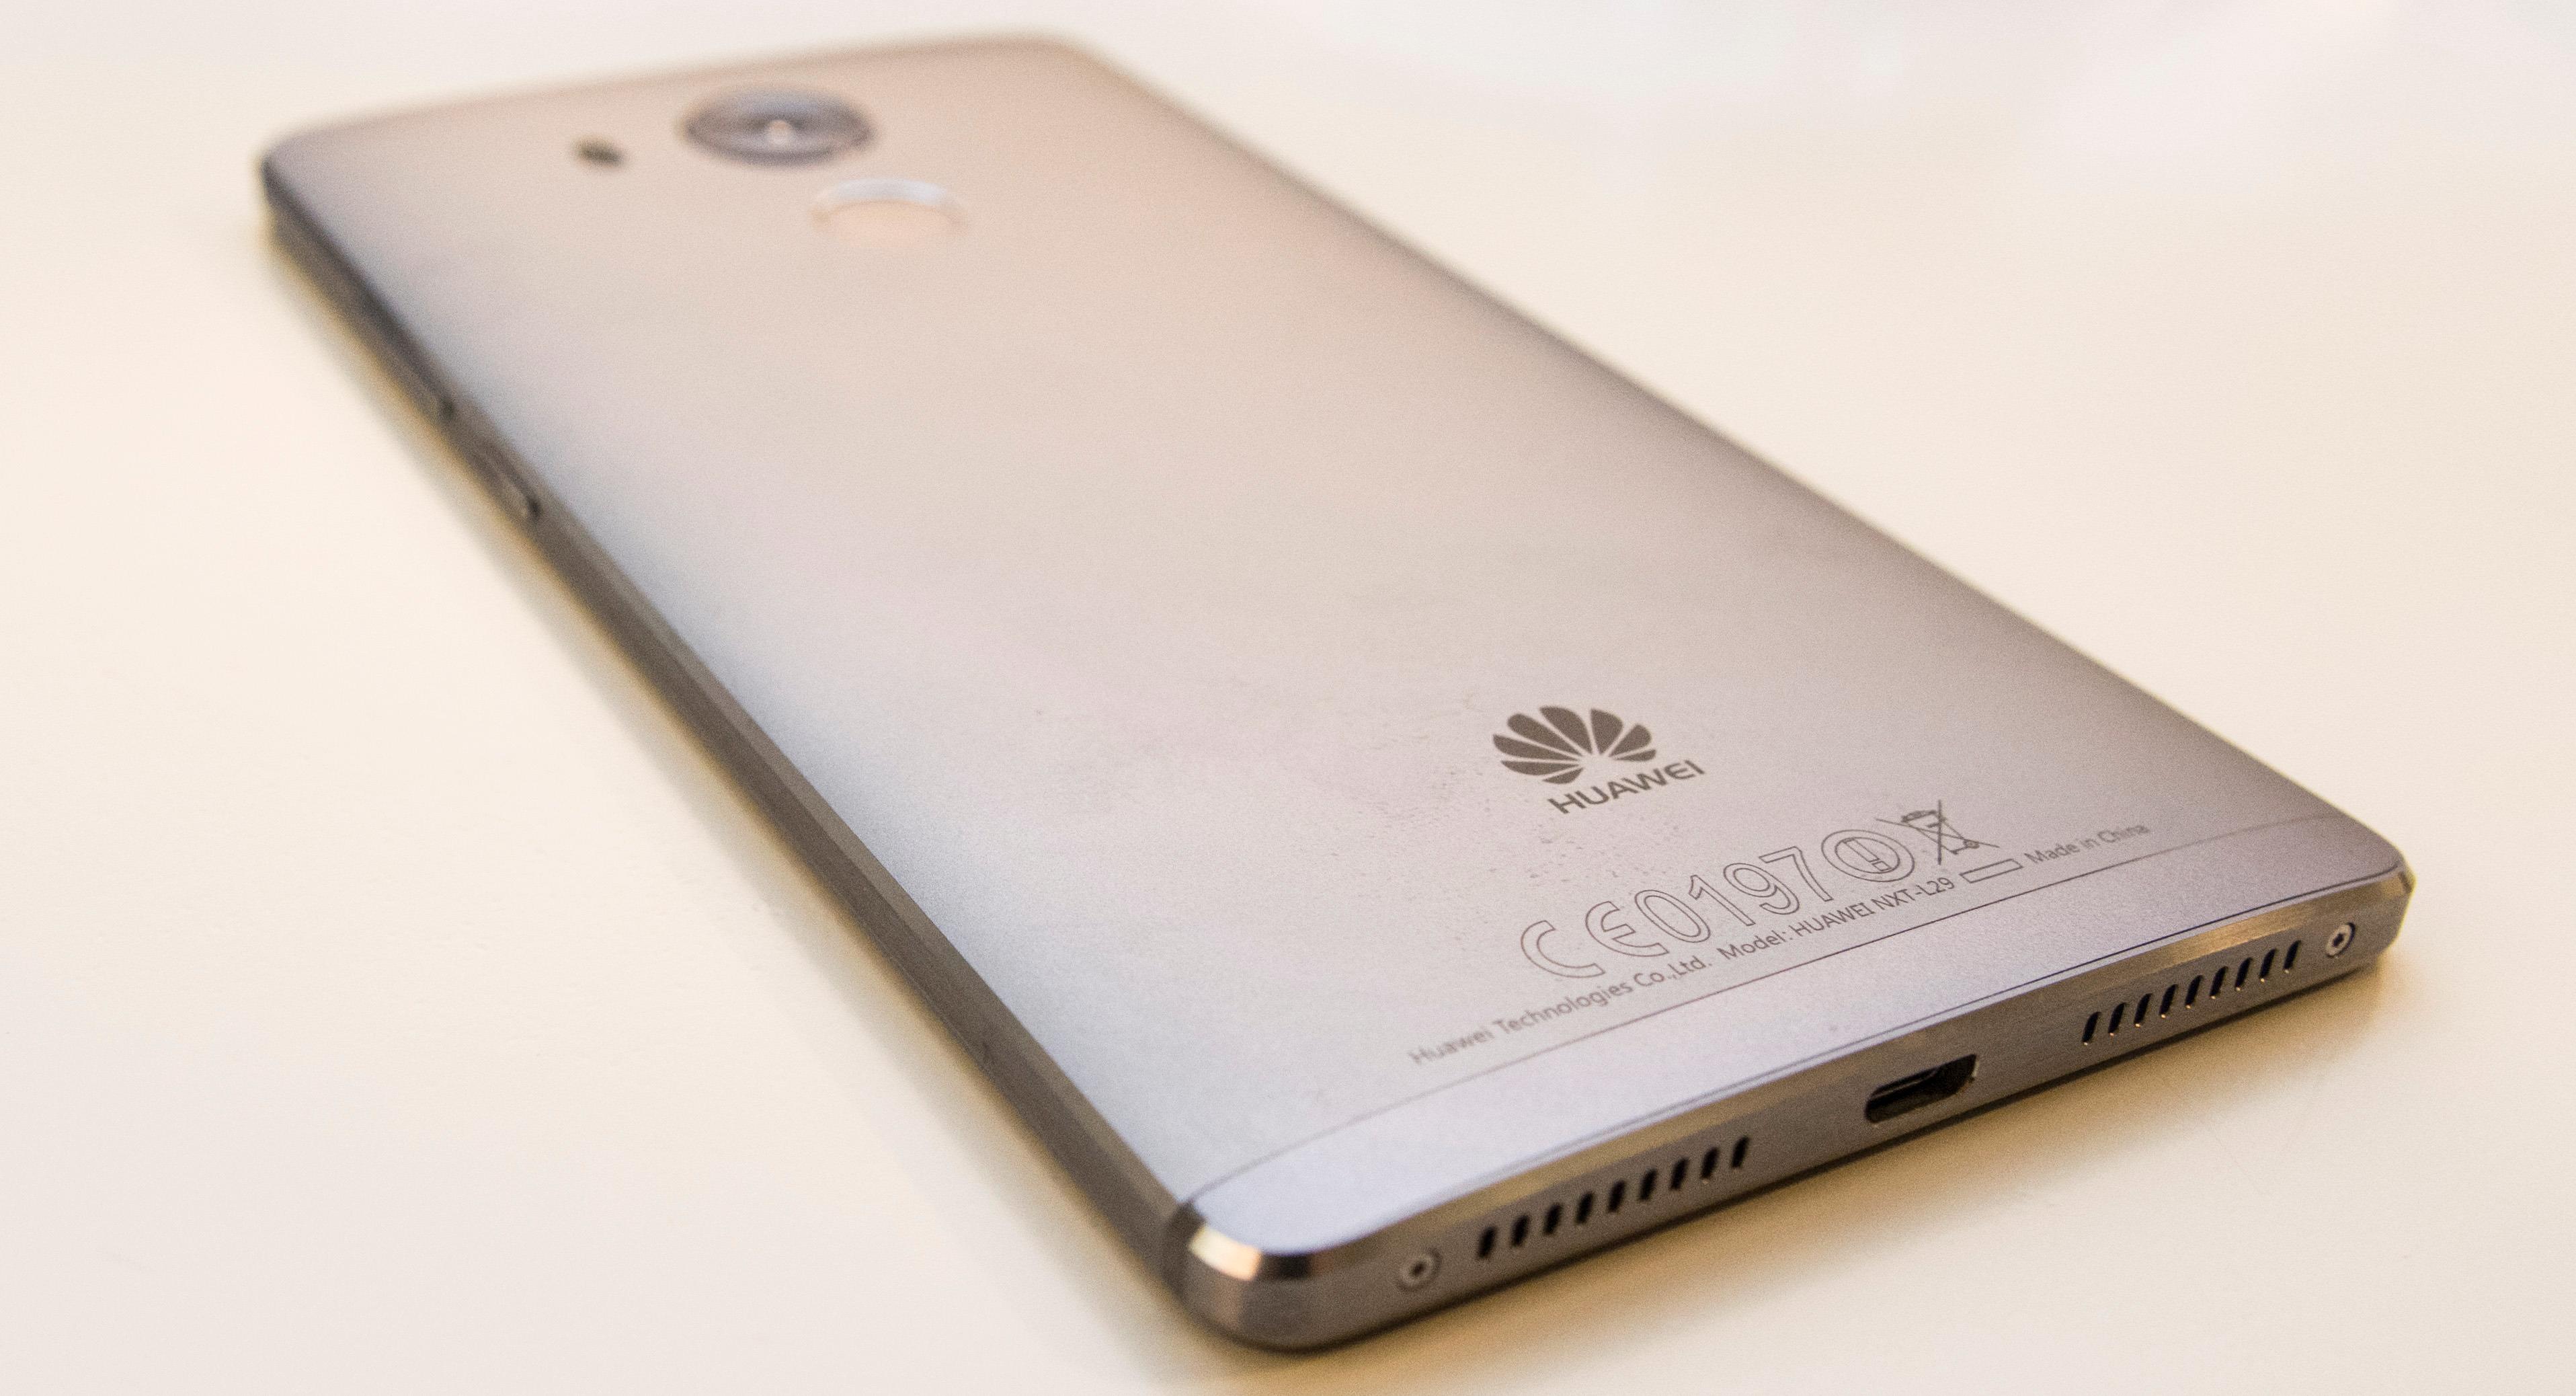 Huawei Mate 8 er bygget i aluminium fra topp til tå. Fullt så eksklusiv som en iPhone eller Galaxy S6 Edge ser den kanskje ikke ut, men den er velbygget og virker solid.